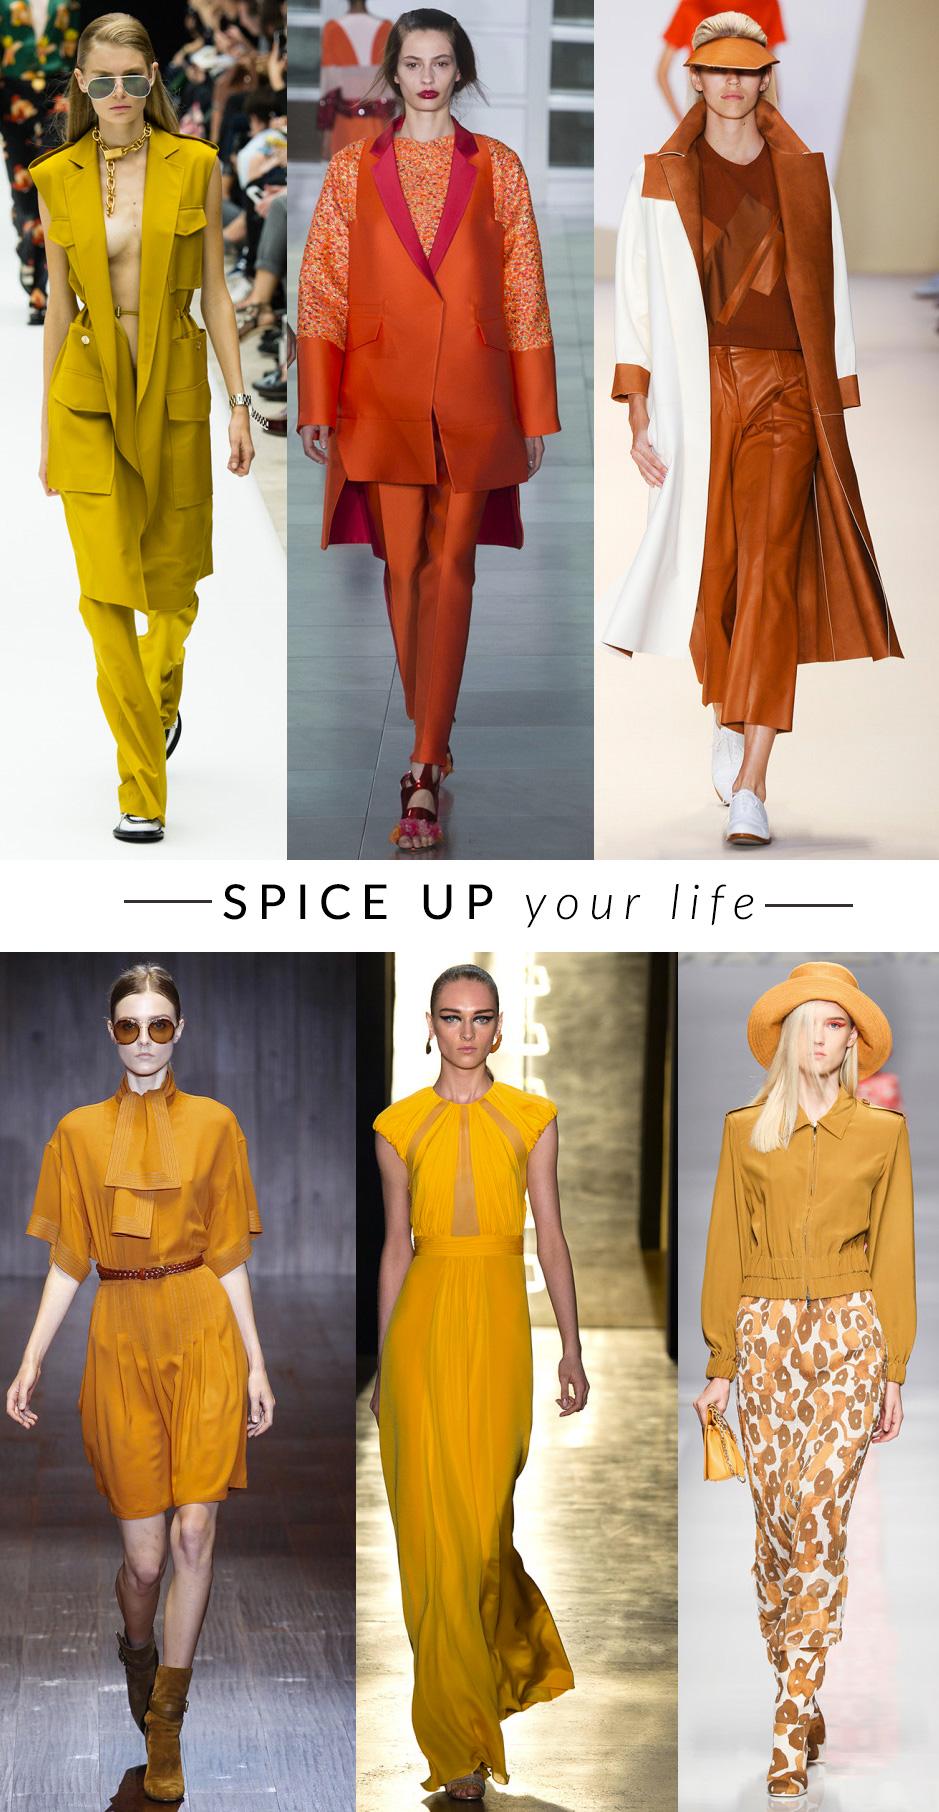 spezie-orientali trend moda primavera estate 2015 fashion blogger elena schiavon 